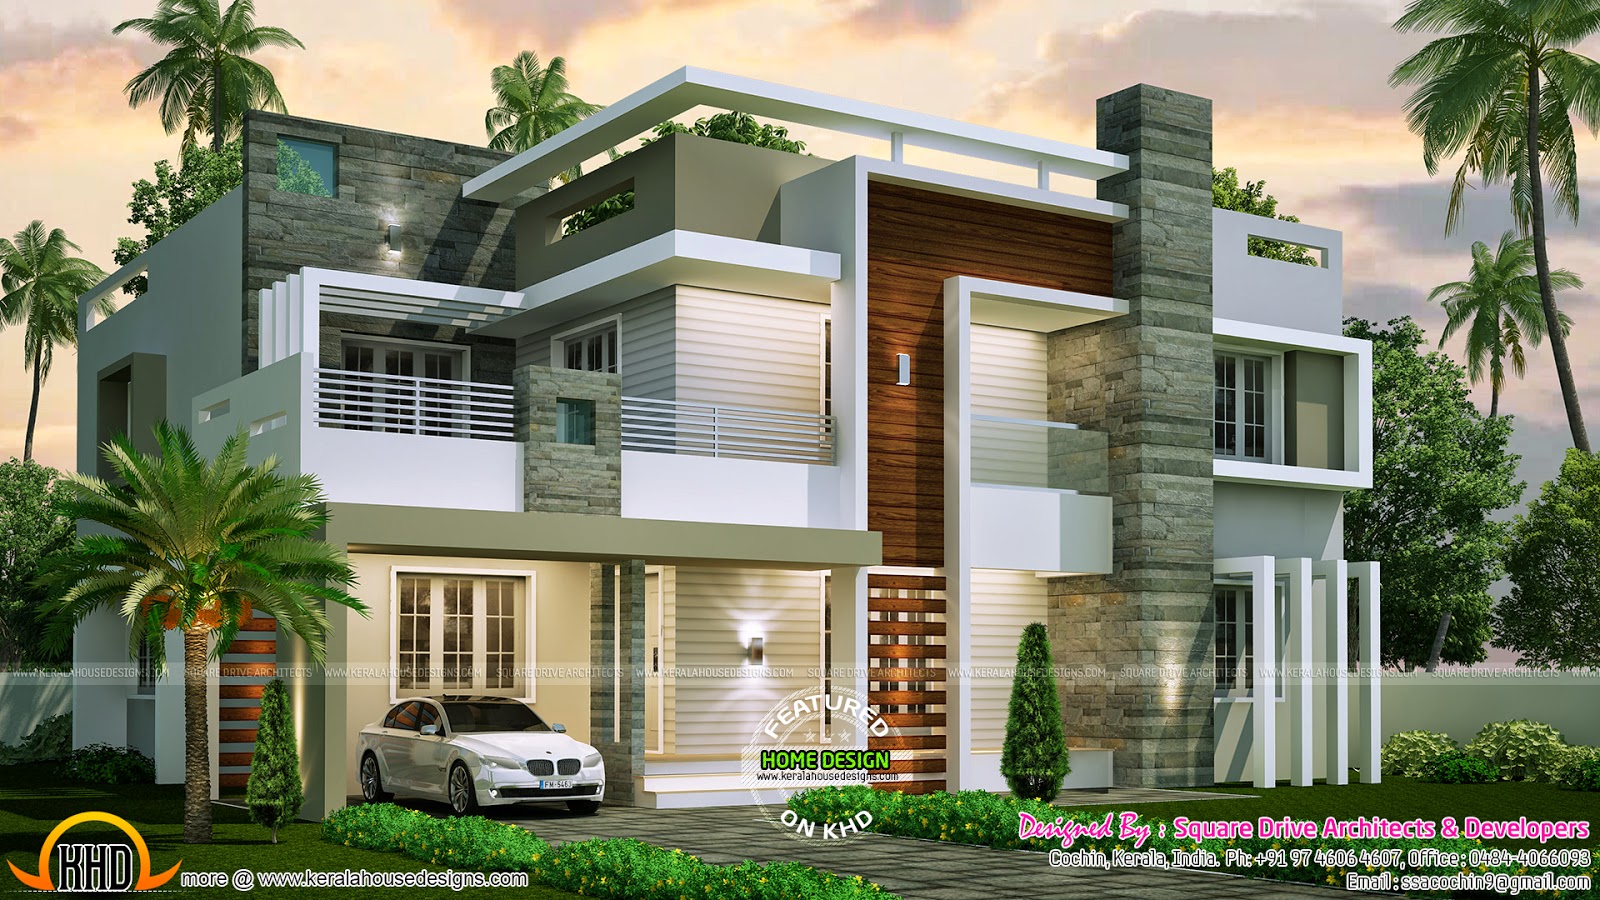 4 bedroom contemporary home design - Kerala home design ...